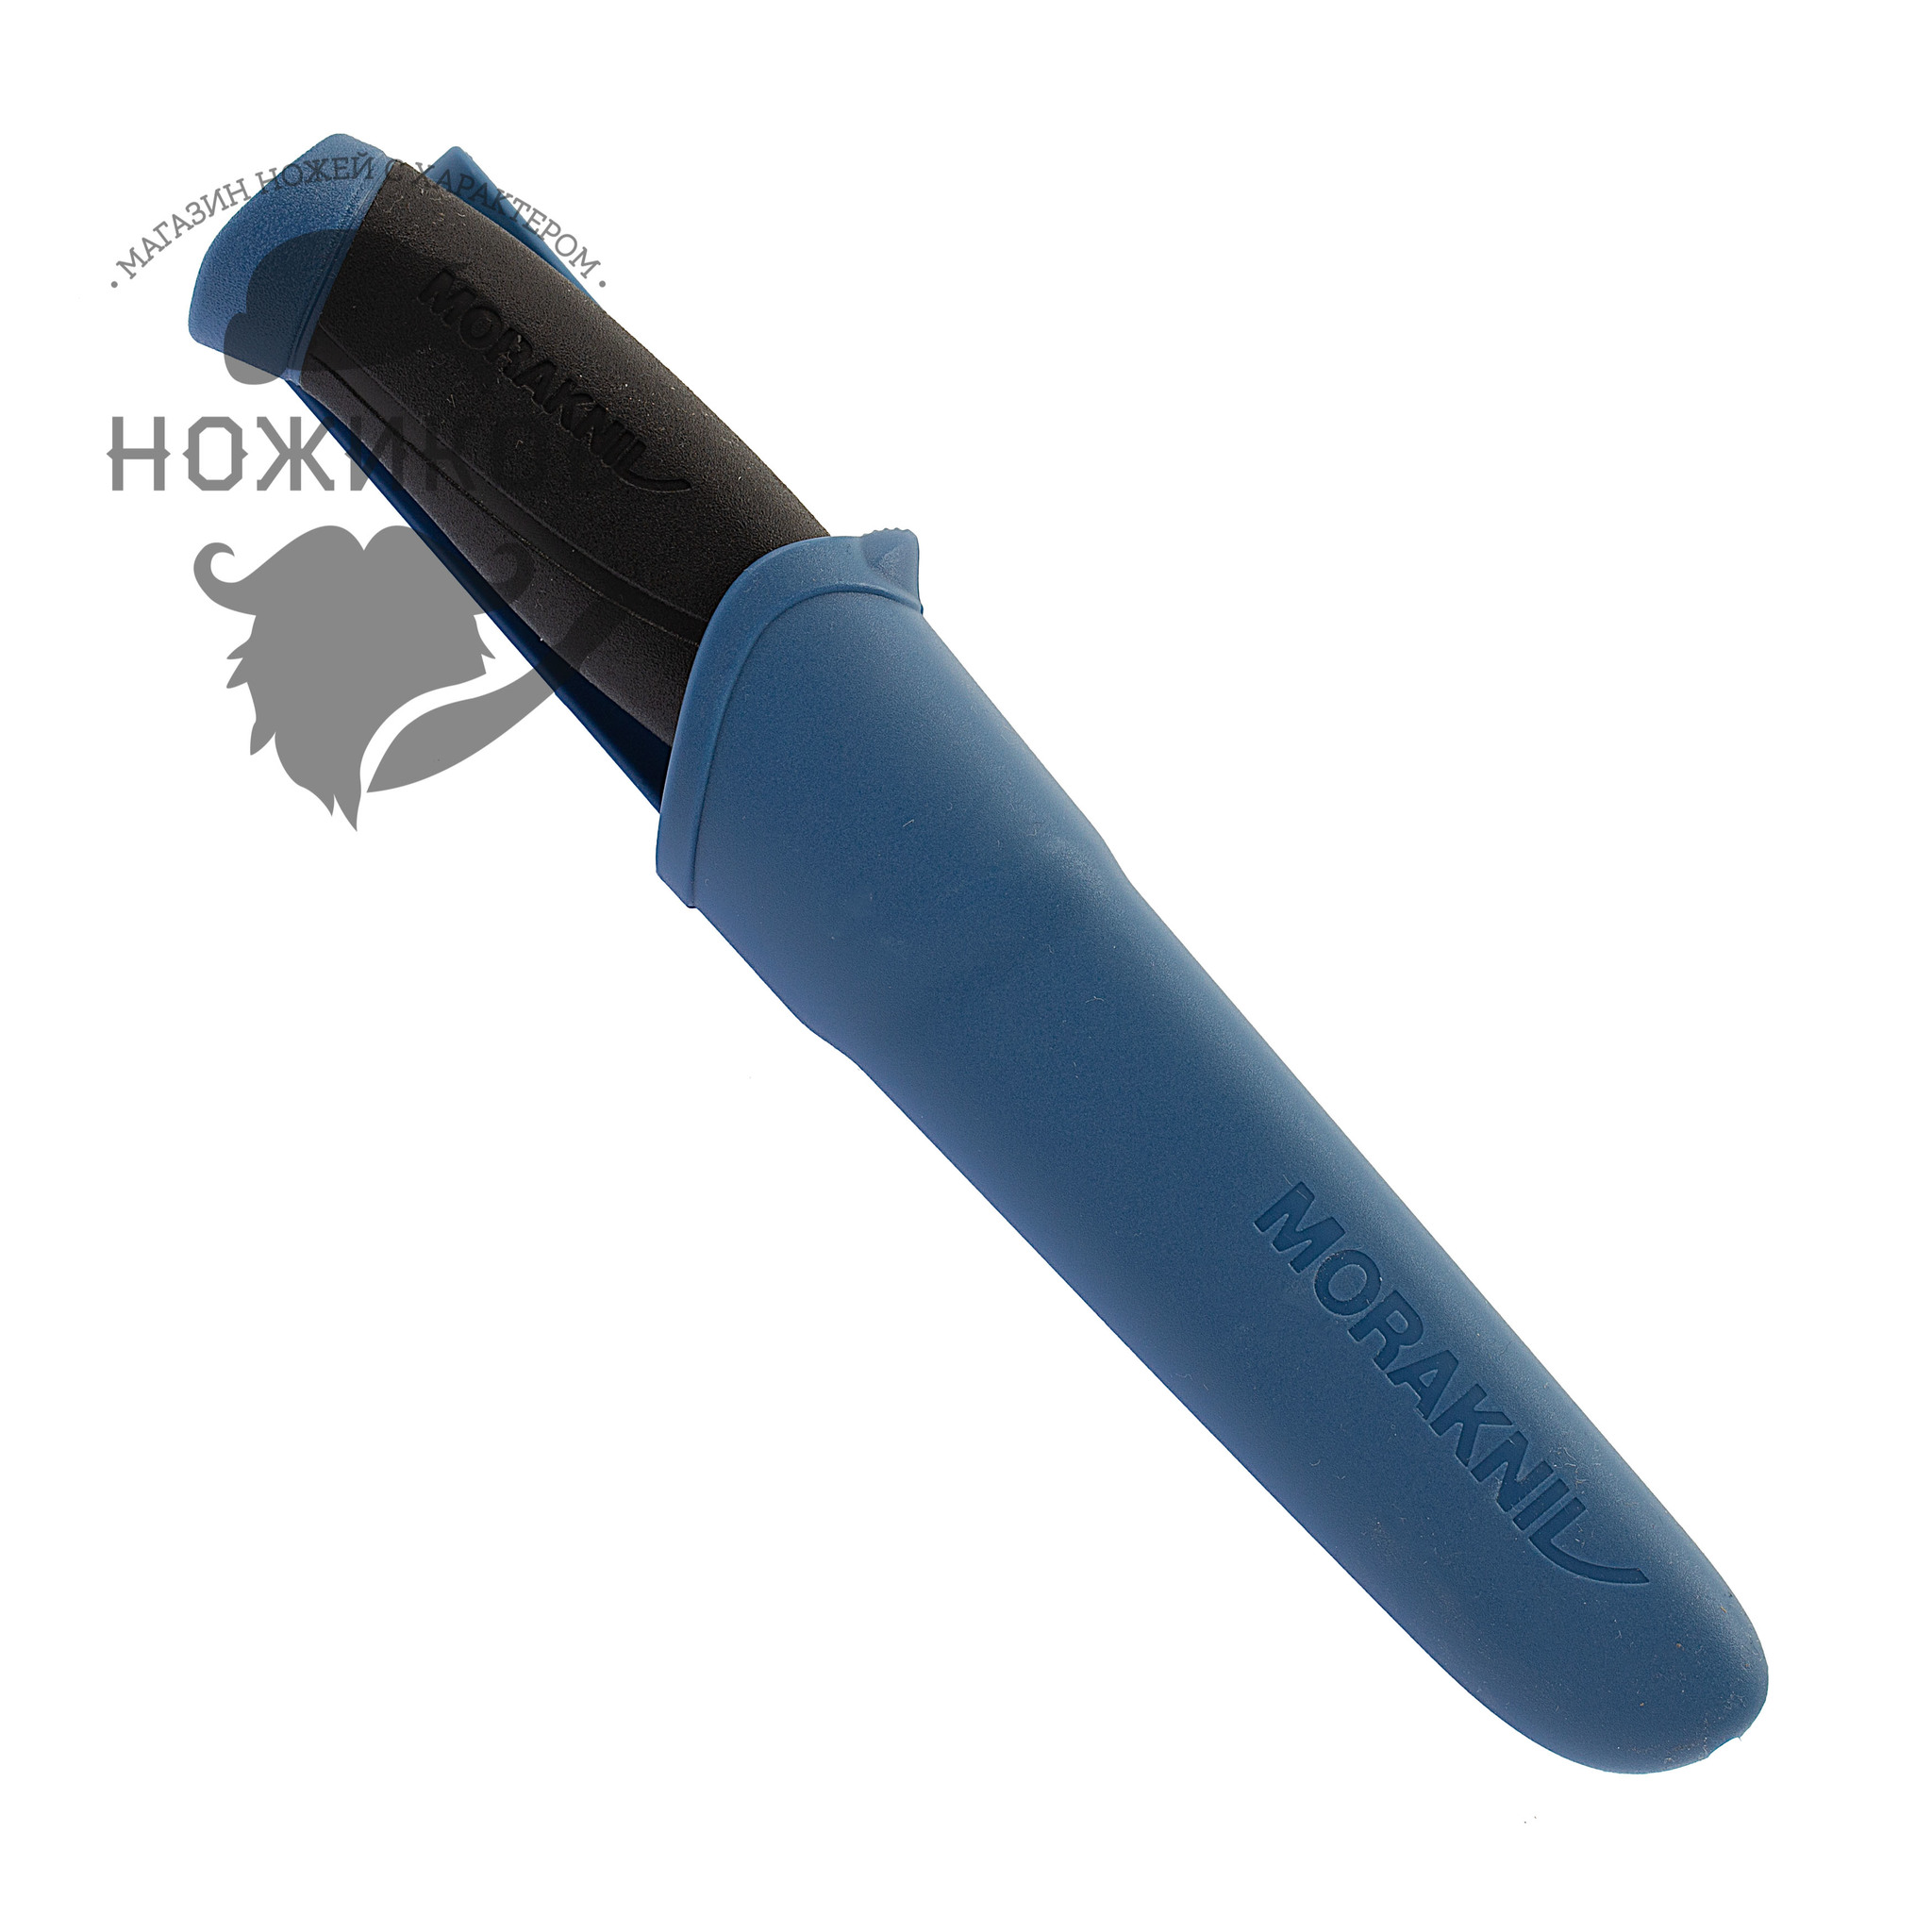 Нож с фиксированным лезвием Morakniv Companion Navy Blue, сталь Sandvik 12C27, рукоять резина/пластик от Ножиков